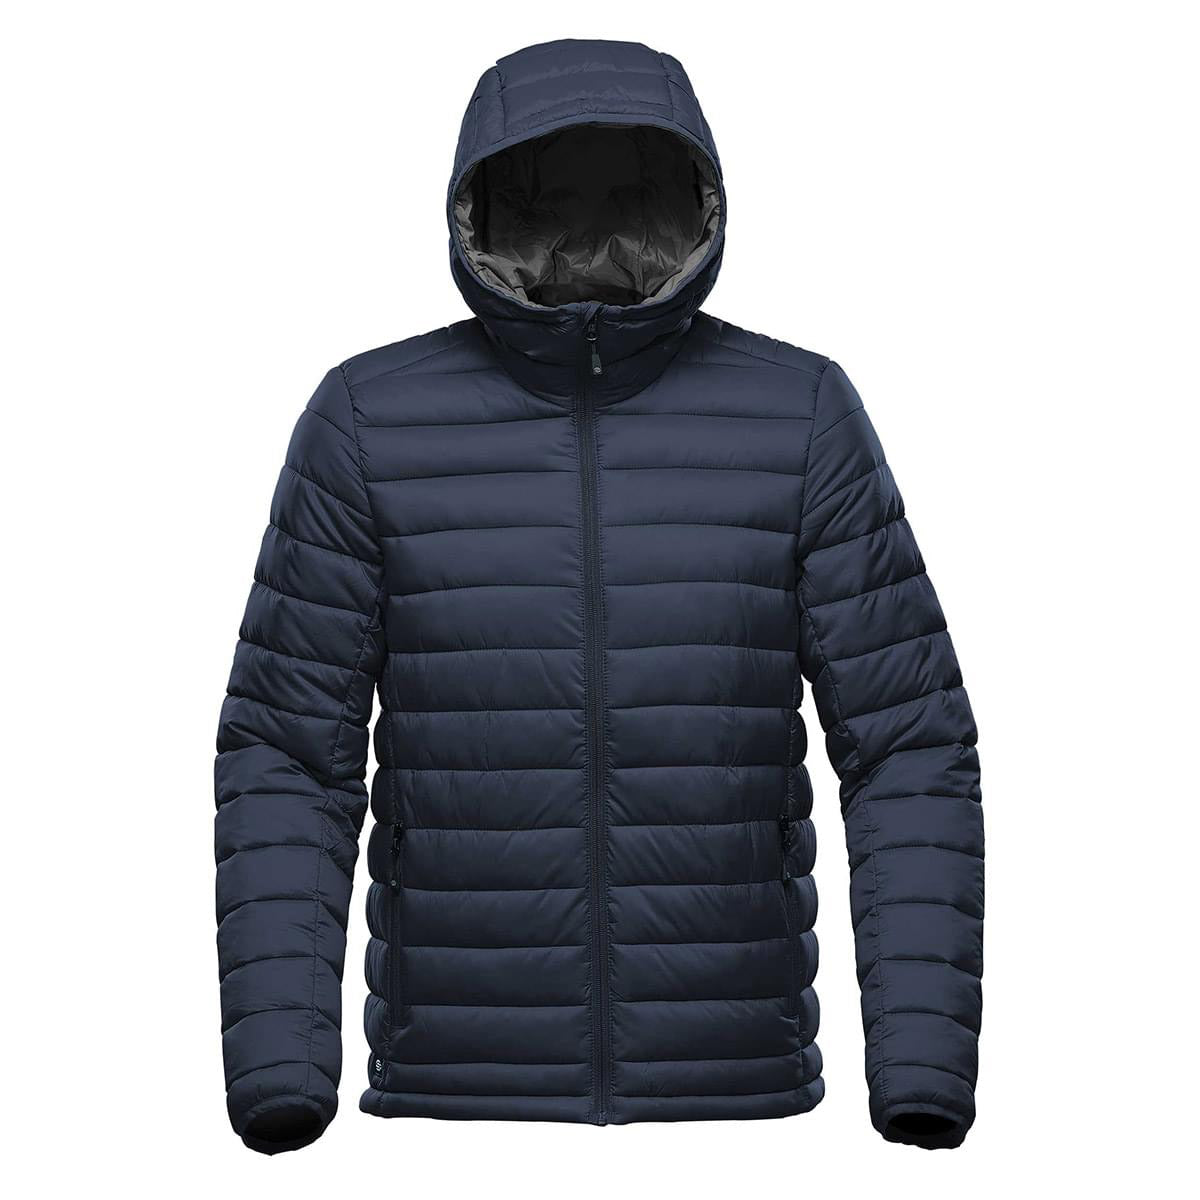 YYDGH Men's Plus Size Jackets-Windproof Bomber Jacket Full Zip Winter Warm  Padded Coats Outwear(Black,XXL) 